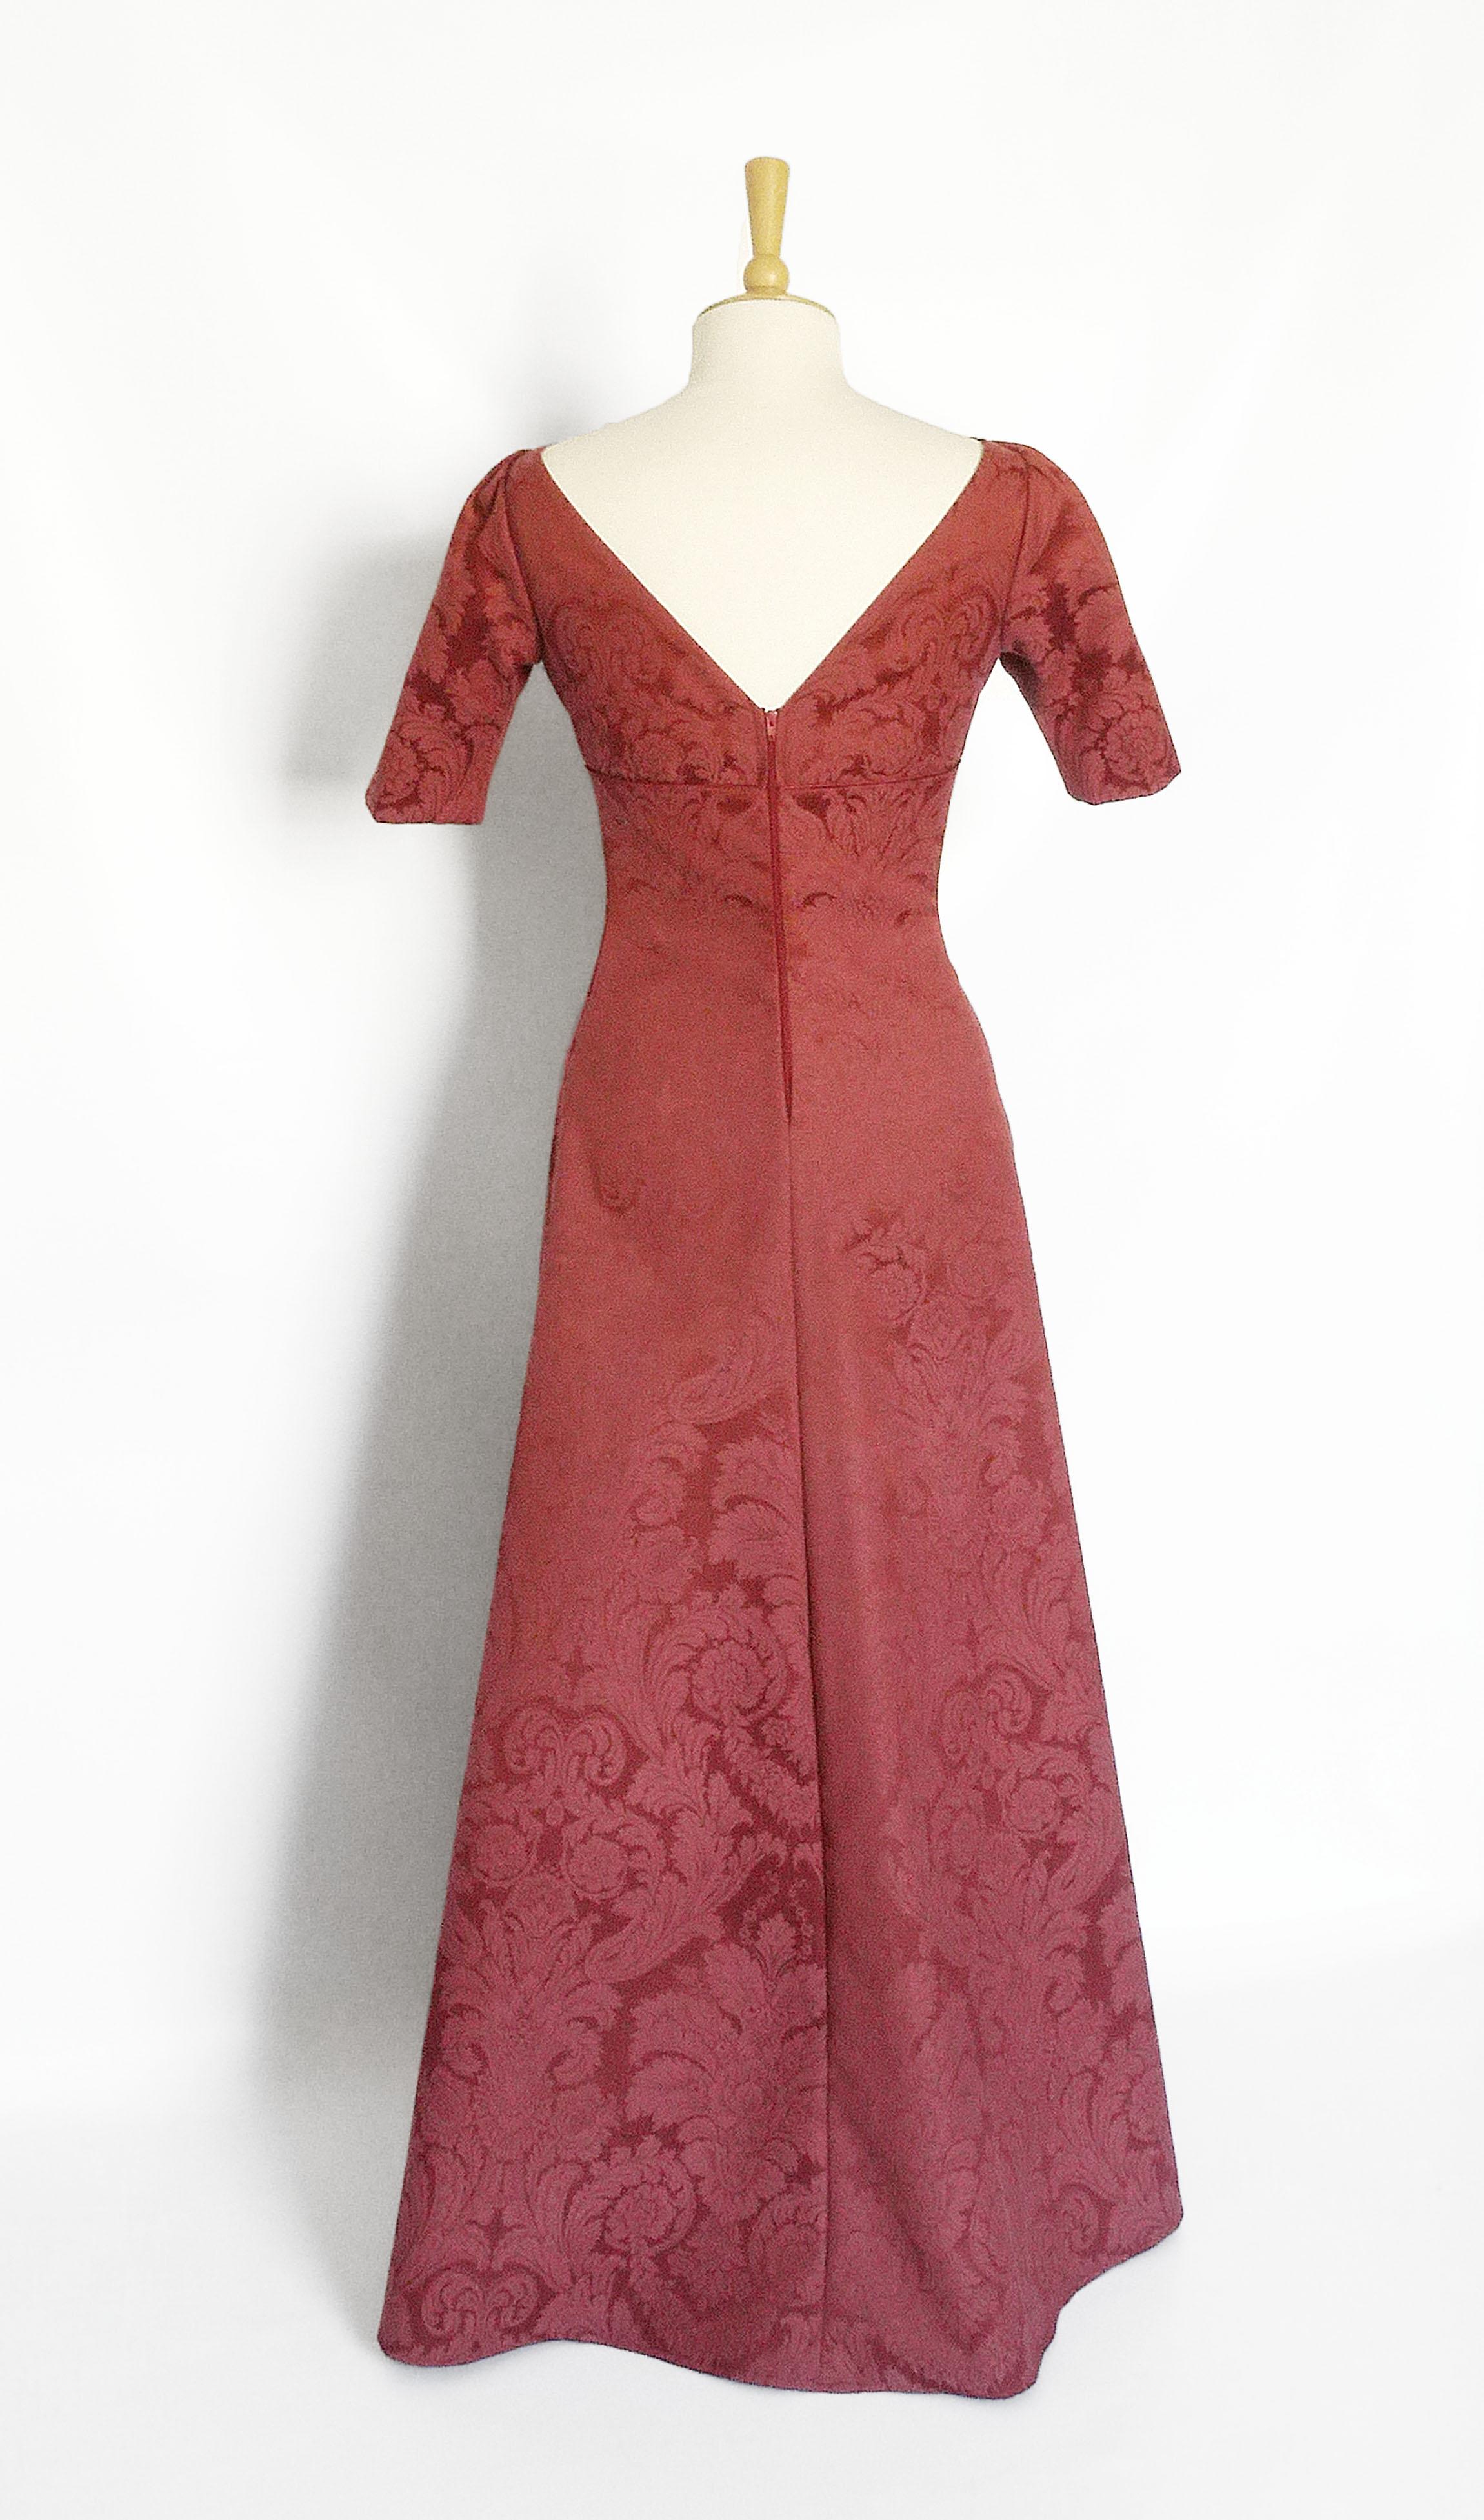 Size UK 10 - Burgundy Damask Tiffany Evening Gown